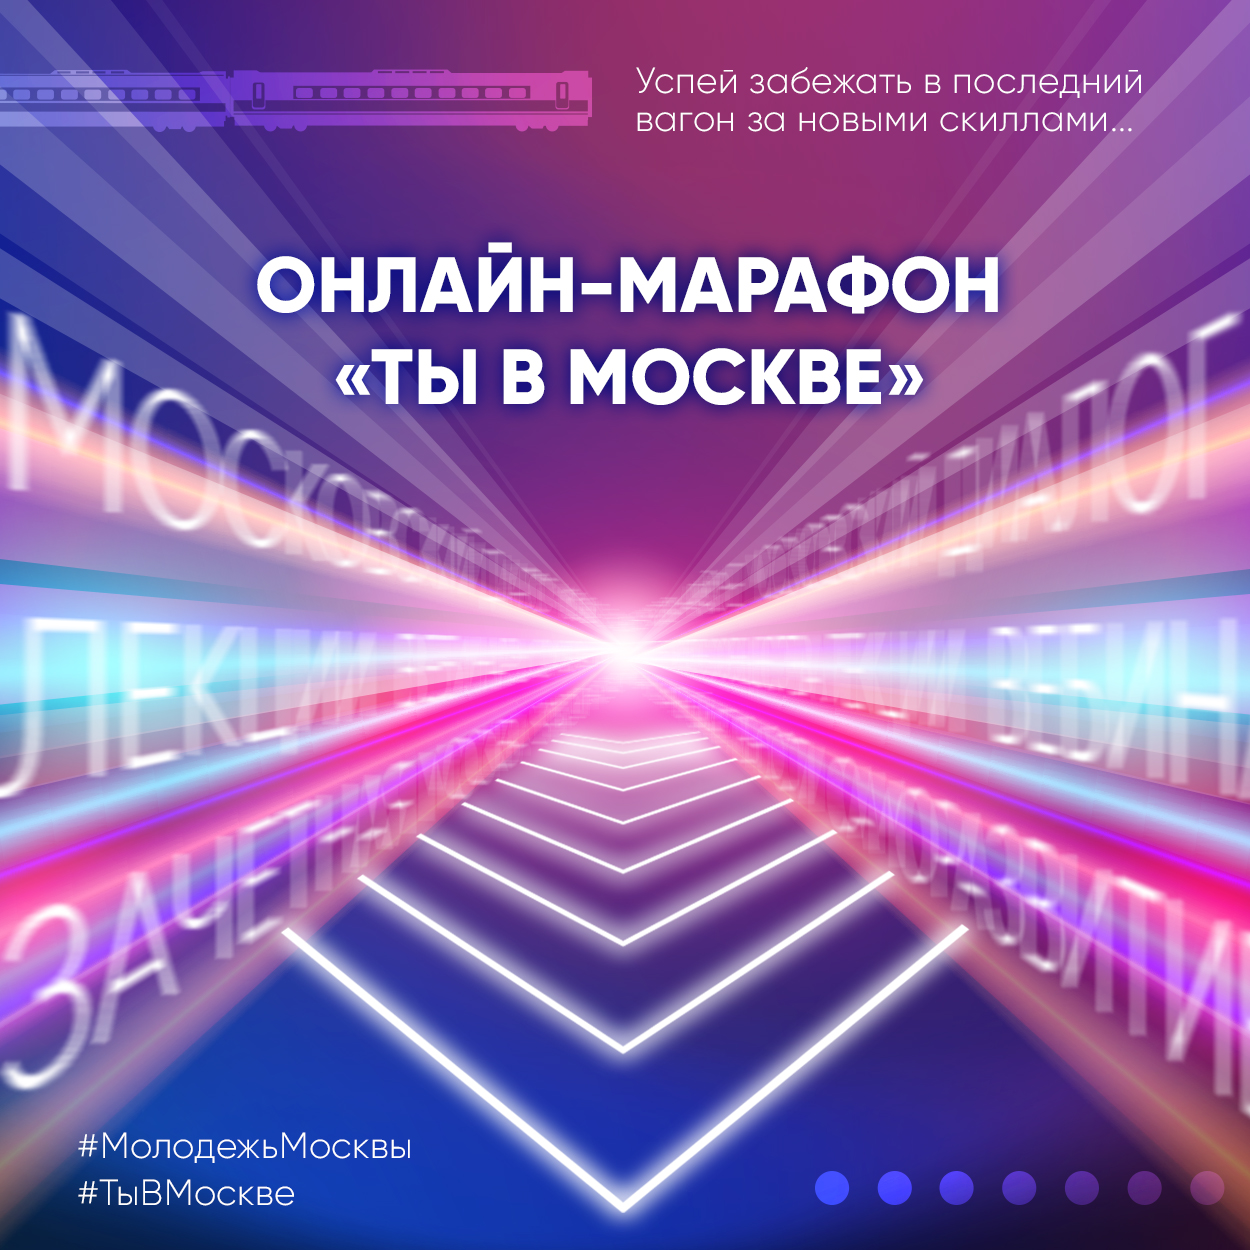 В Москве проведут молодежный онлайн-марафон с образовательной и культурной программой — Сергунина